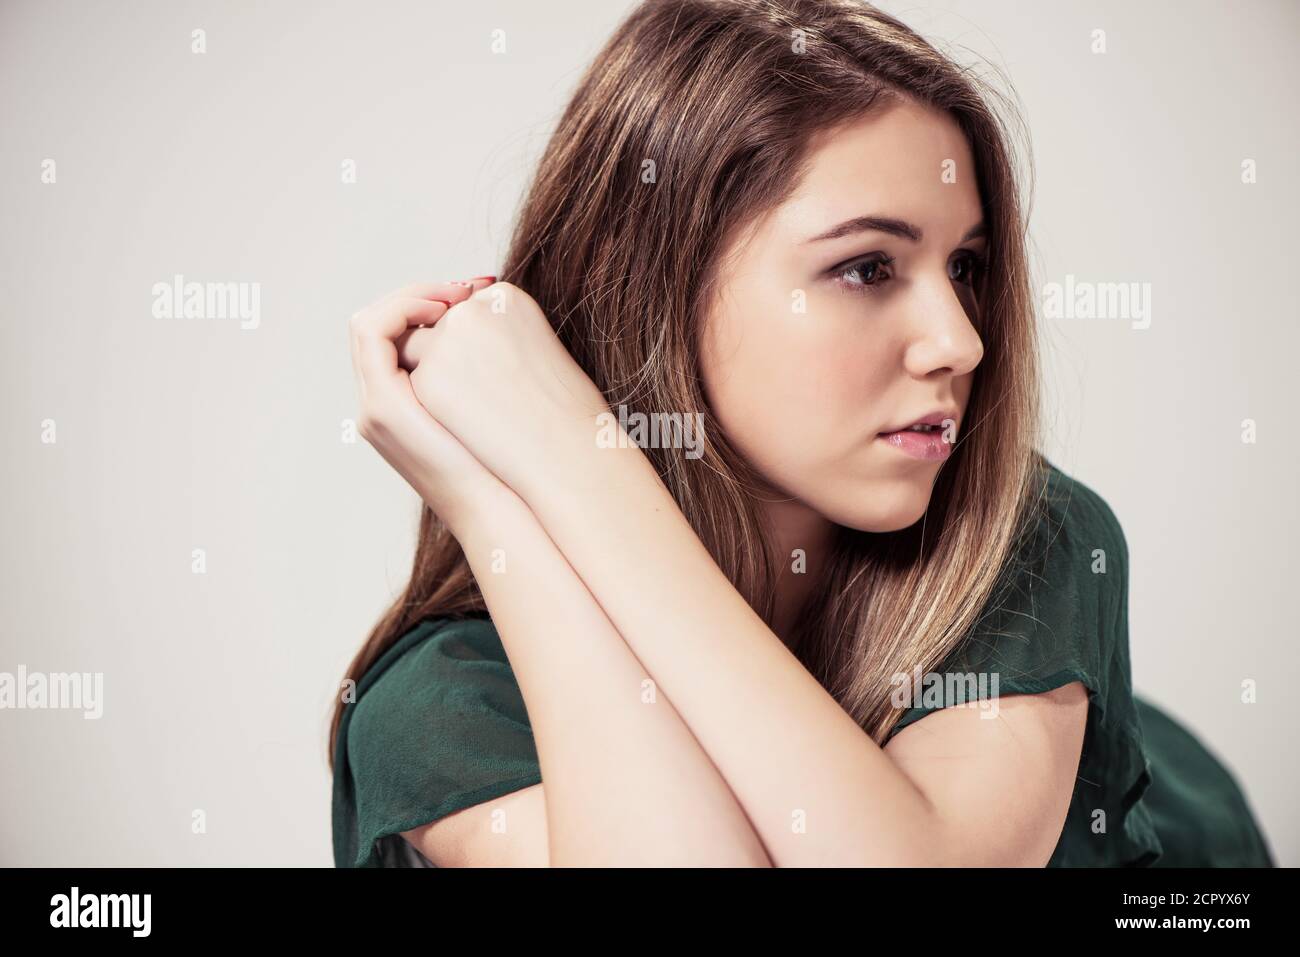 giovane bella ragazza adolescente ritratto su sfondo studio Foto Stock